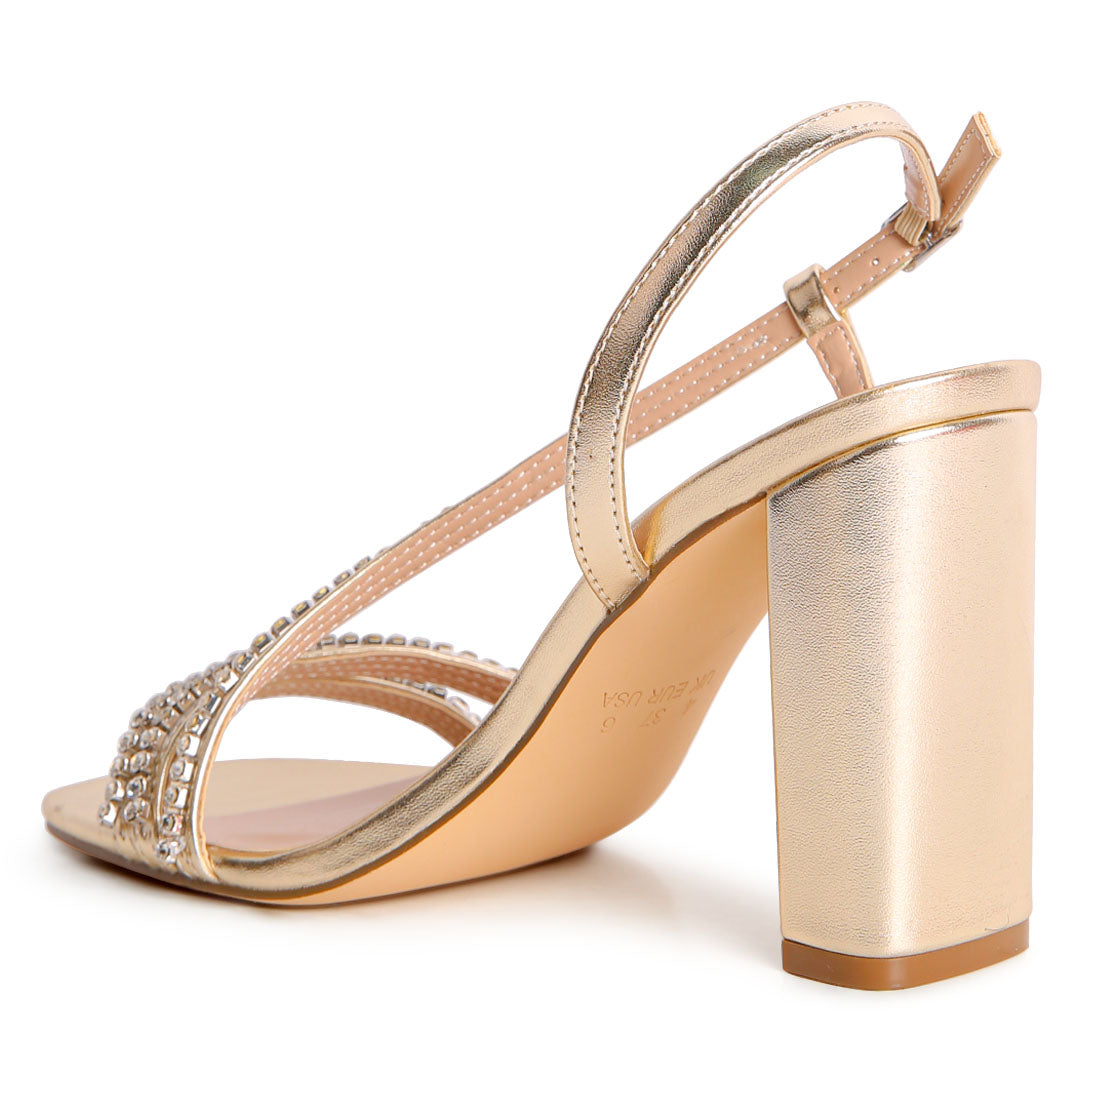 Embellished Block Heel Sandal in Gold